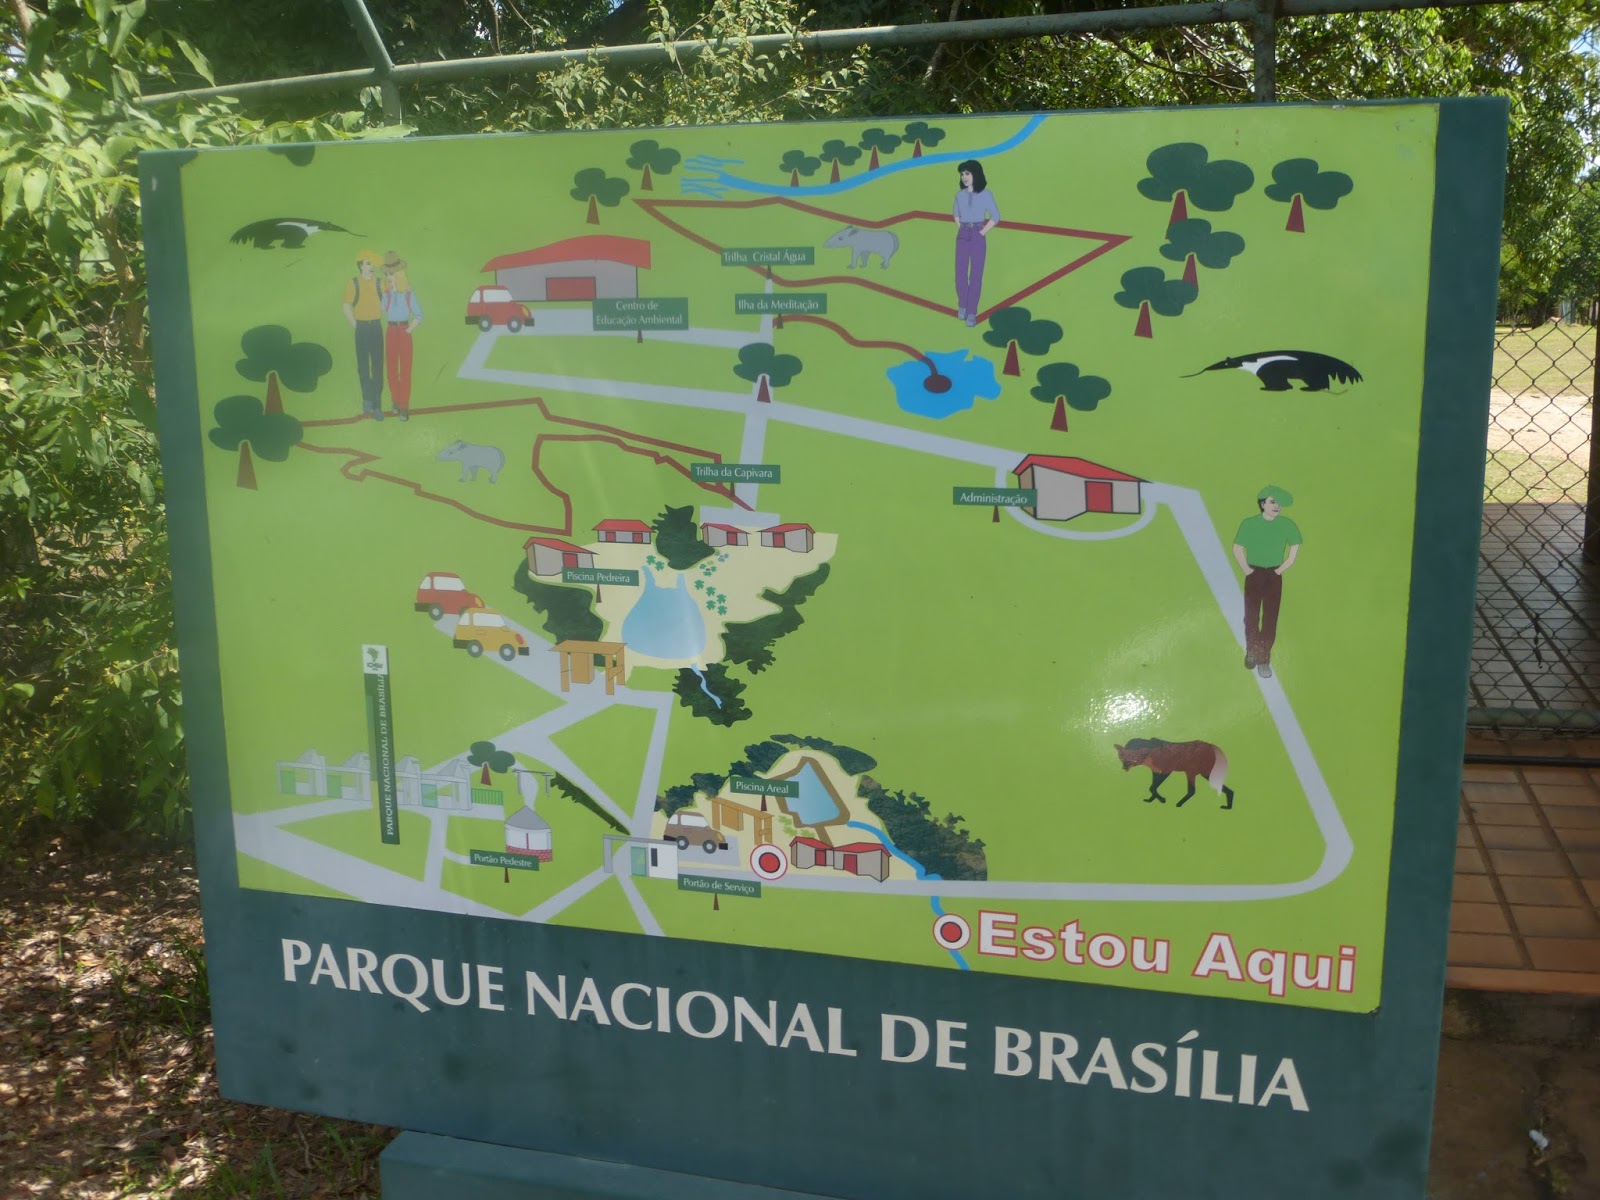 Parque Nacional de Brasília (Água Mineral) - Brasília/DF